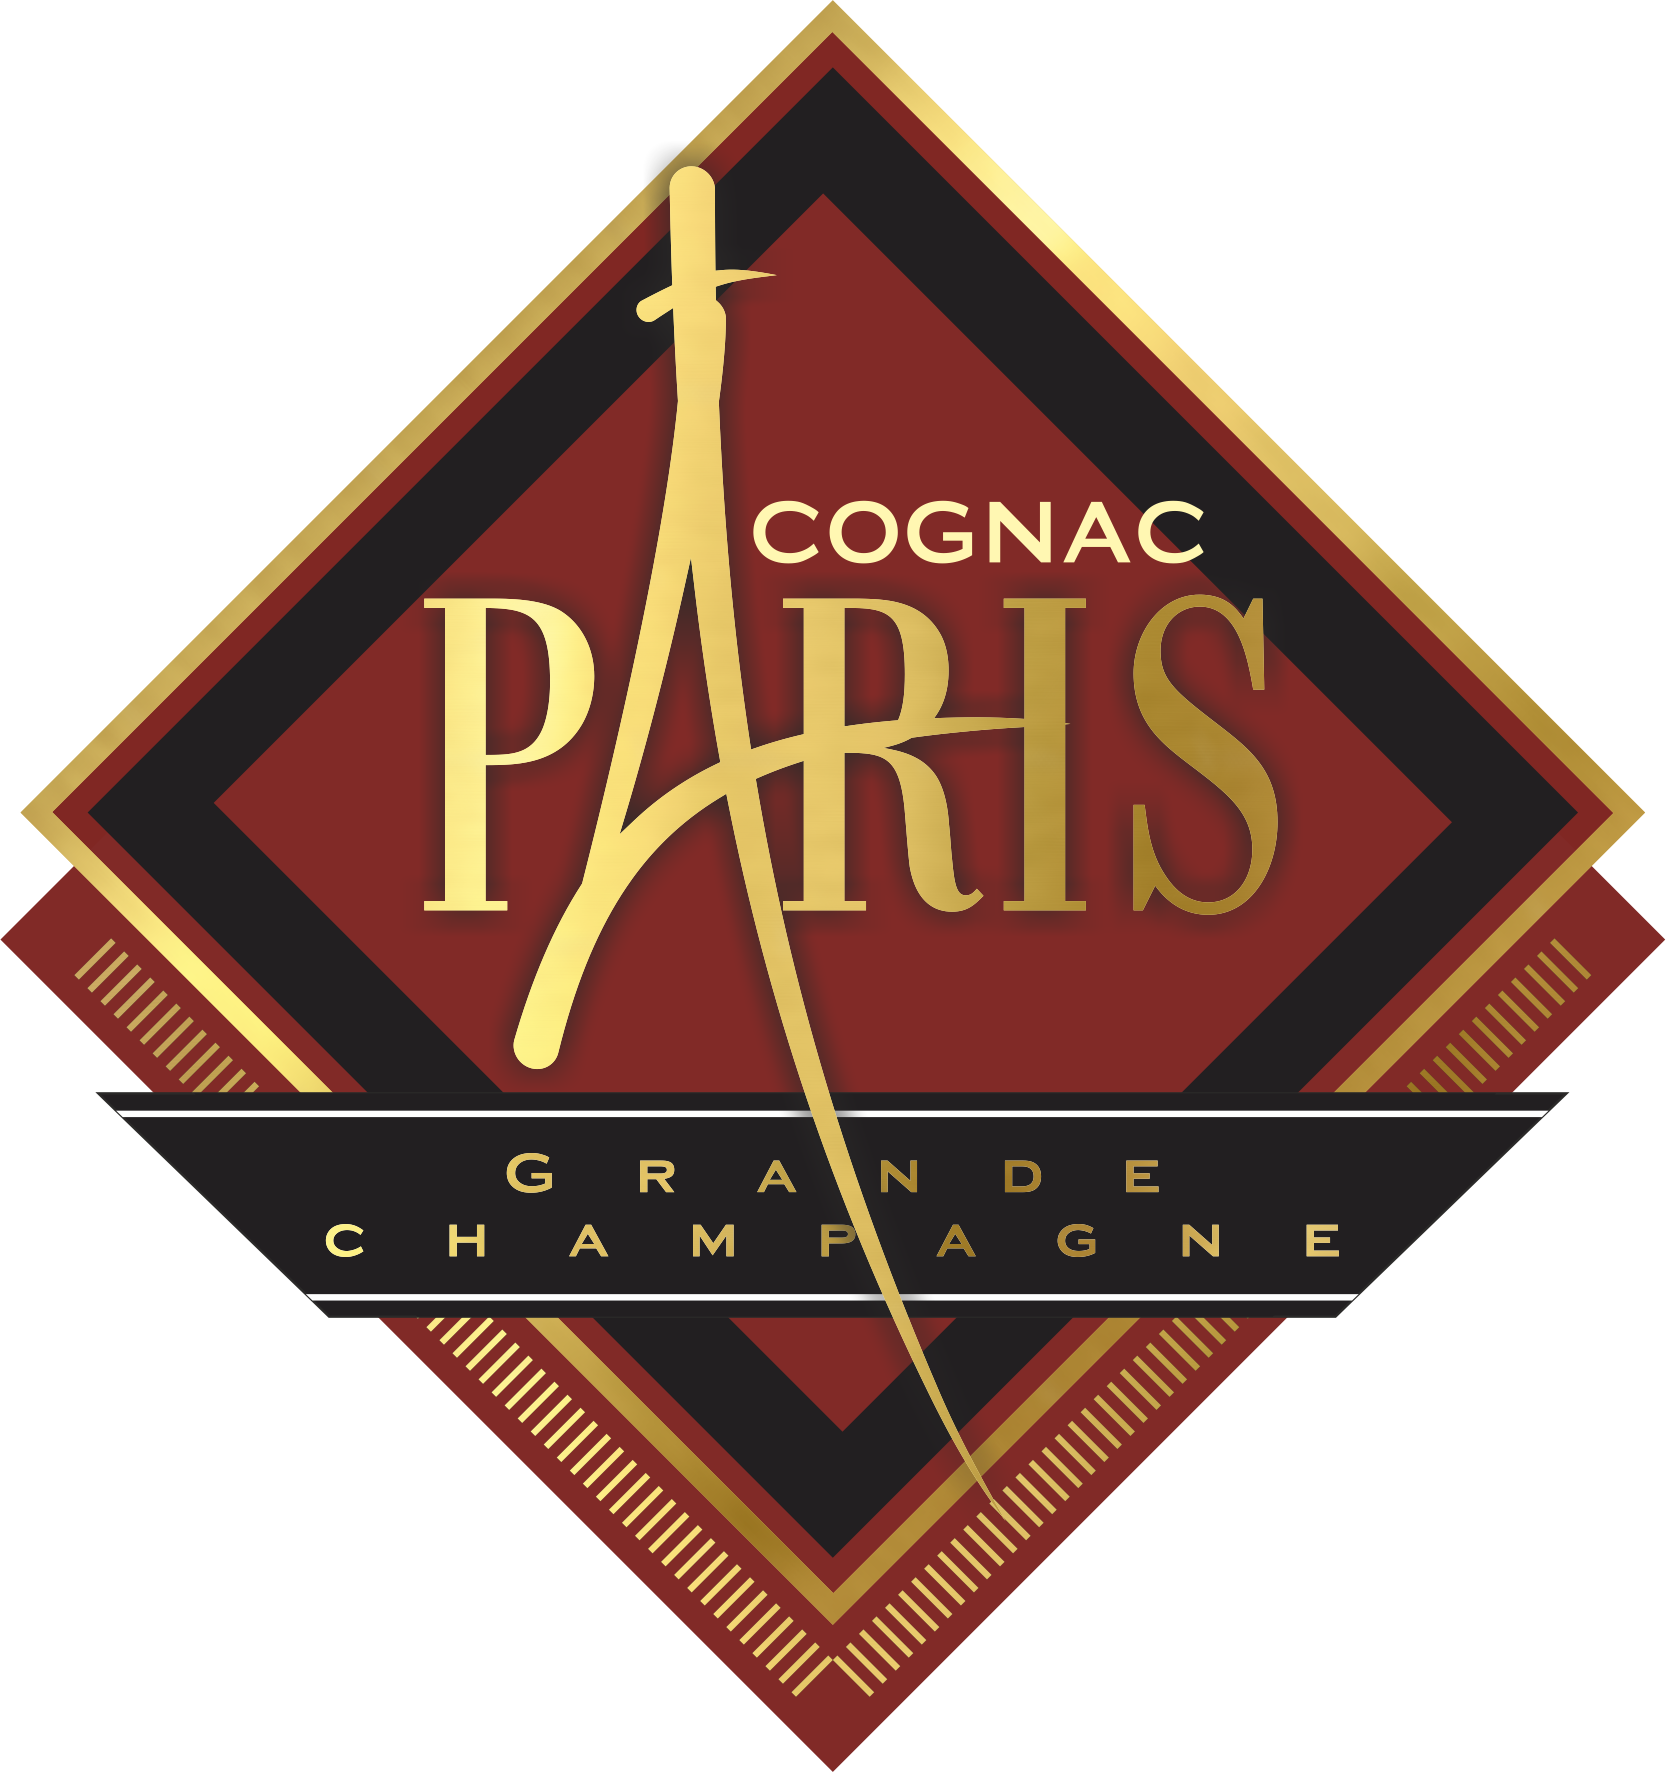 Cognac Paris